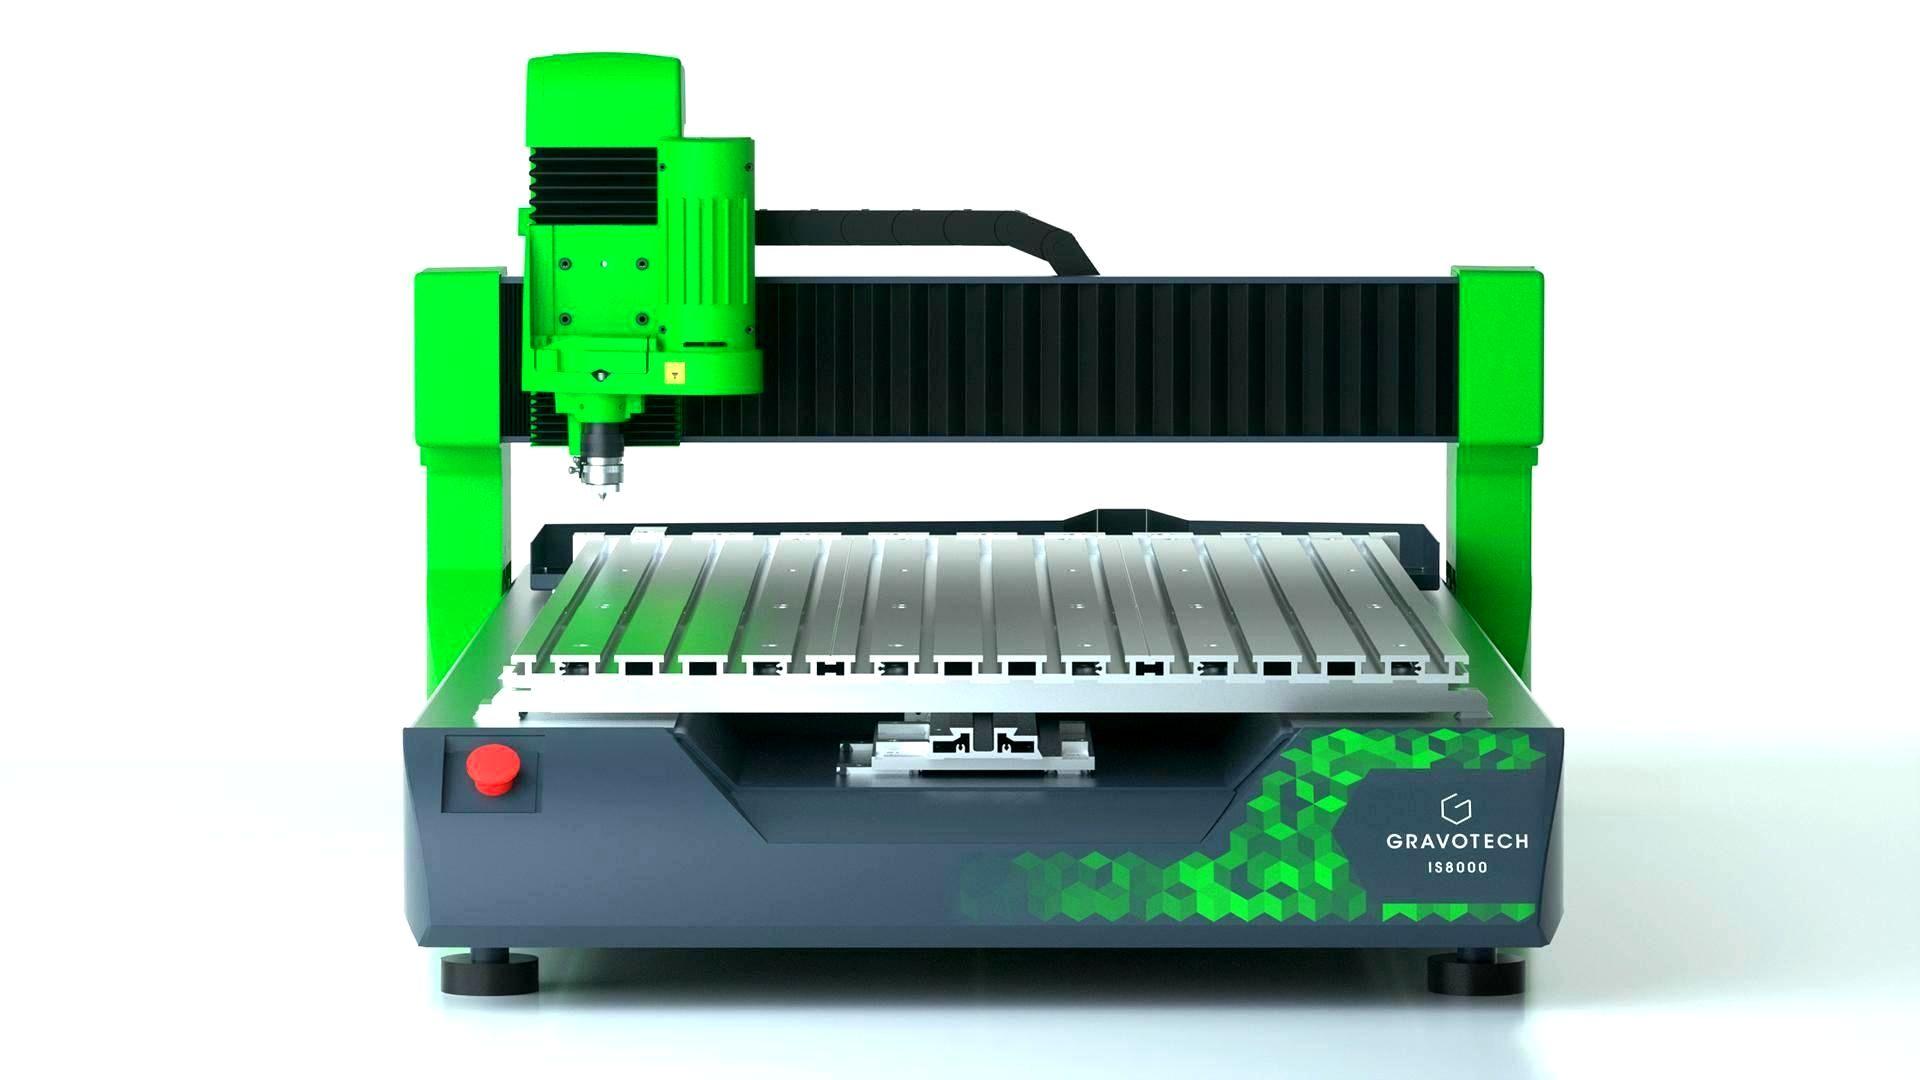 ISx000 large format CNC engraving machine.